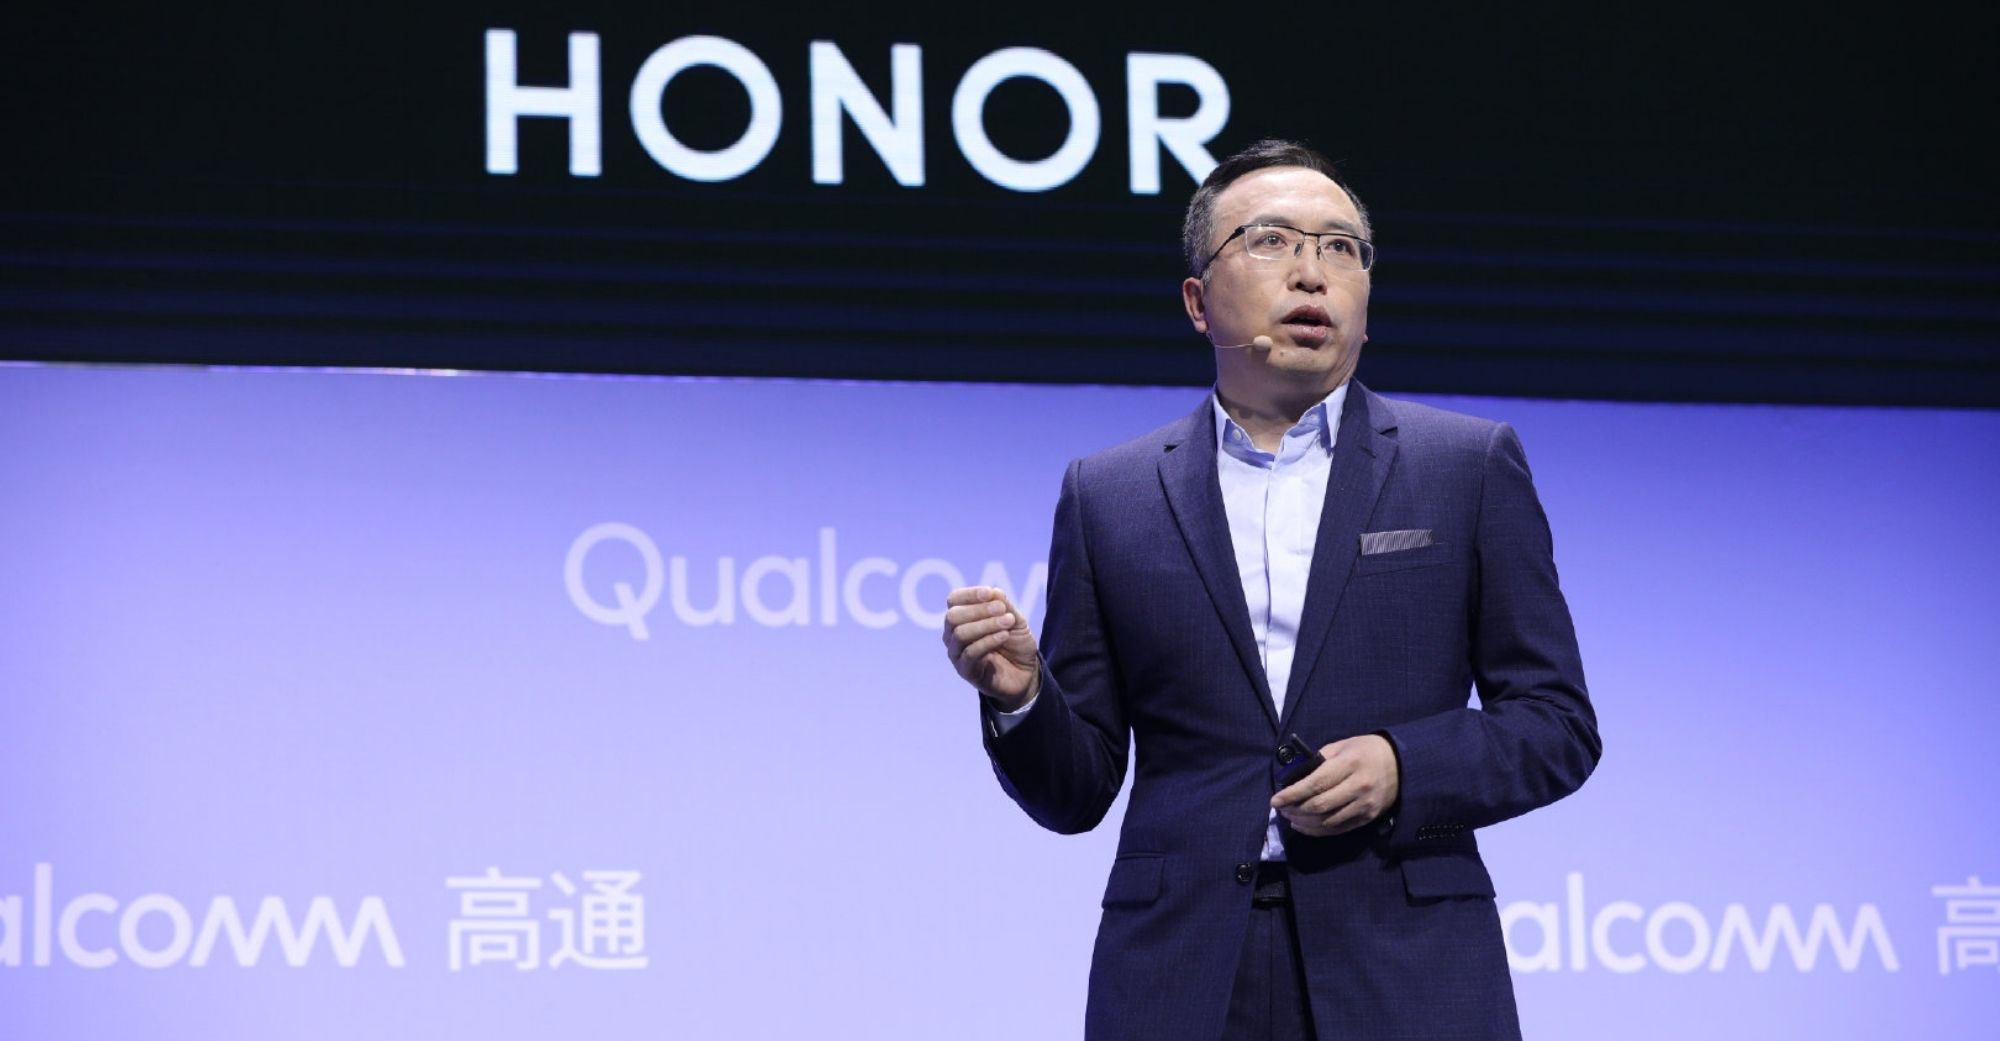 Honor50 Series ကို ဇွန်လမှာစတင်မိတ်ဆက်မှာဖြစ်ပြီး Qualcomm New Xiao Dragon 778G chipset